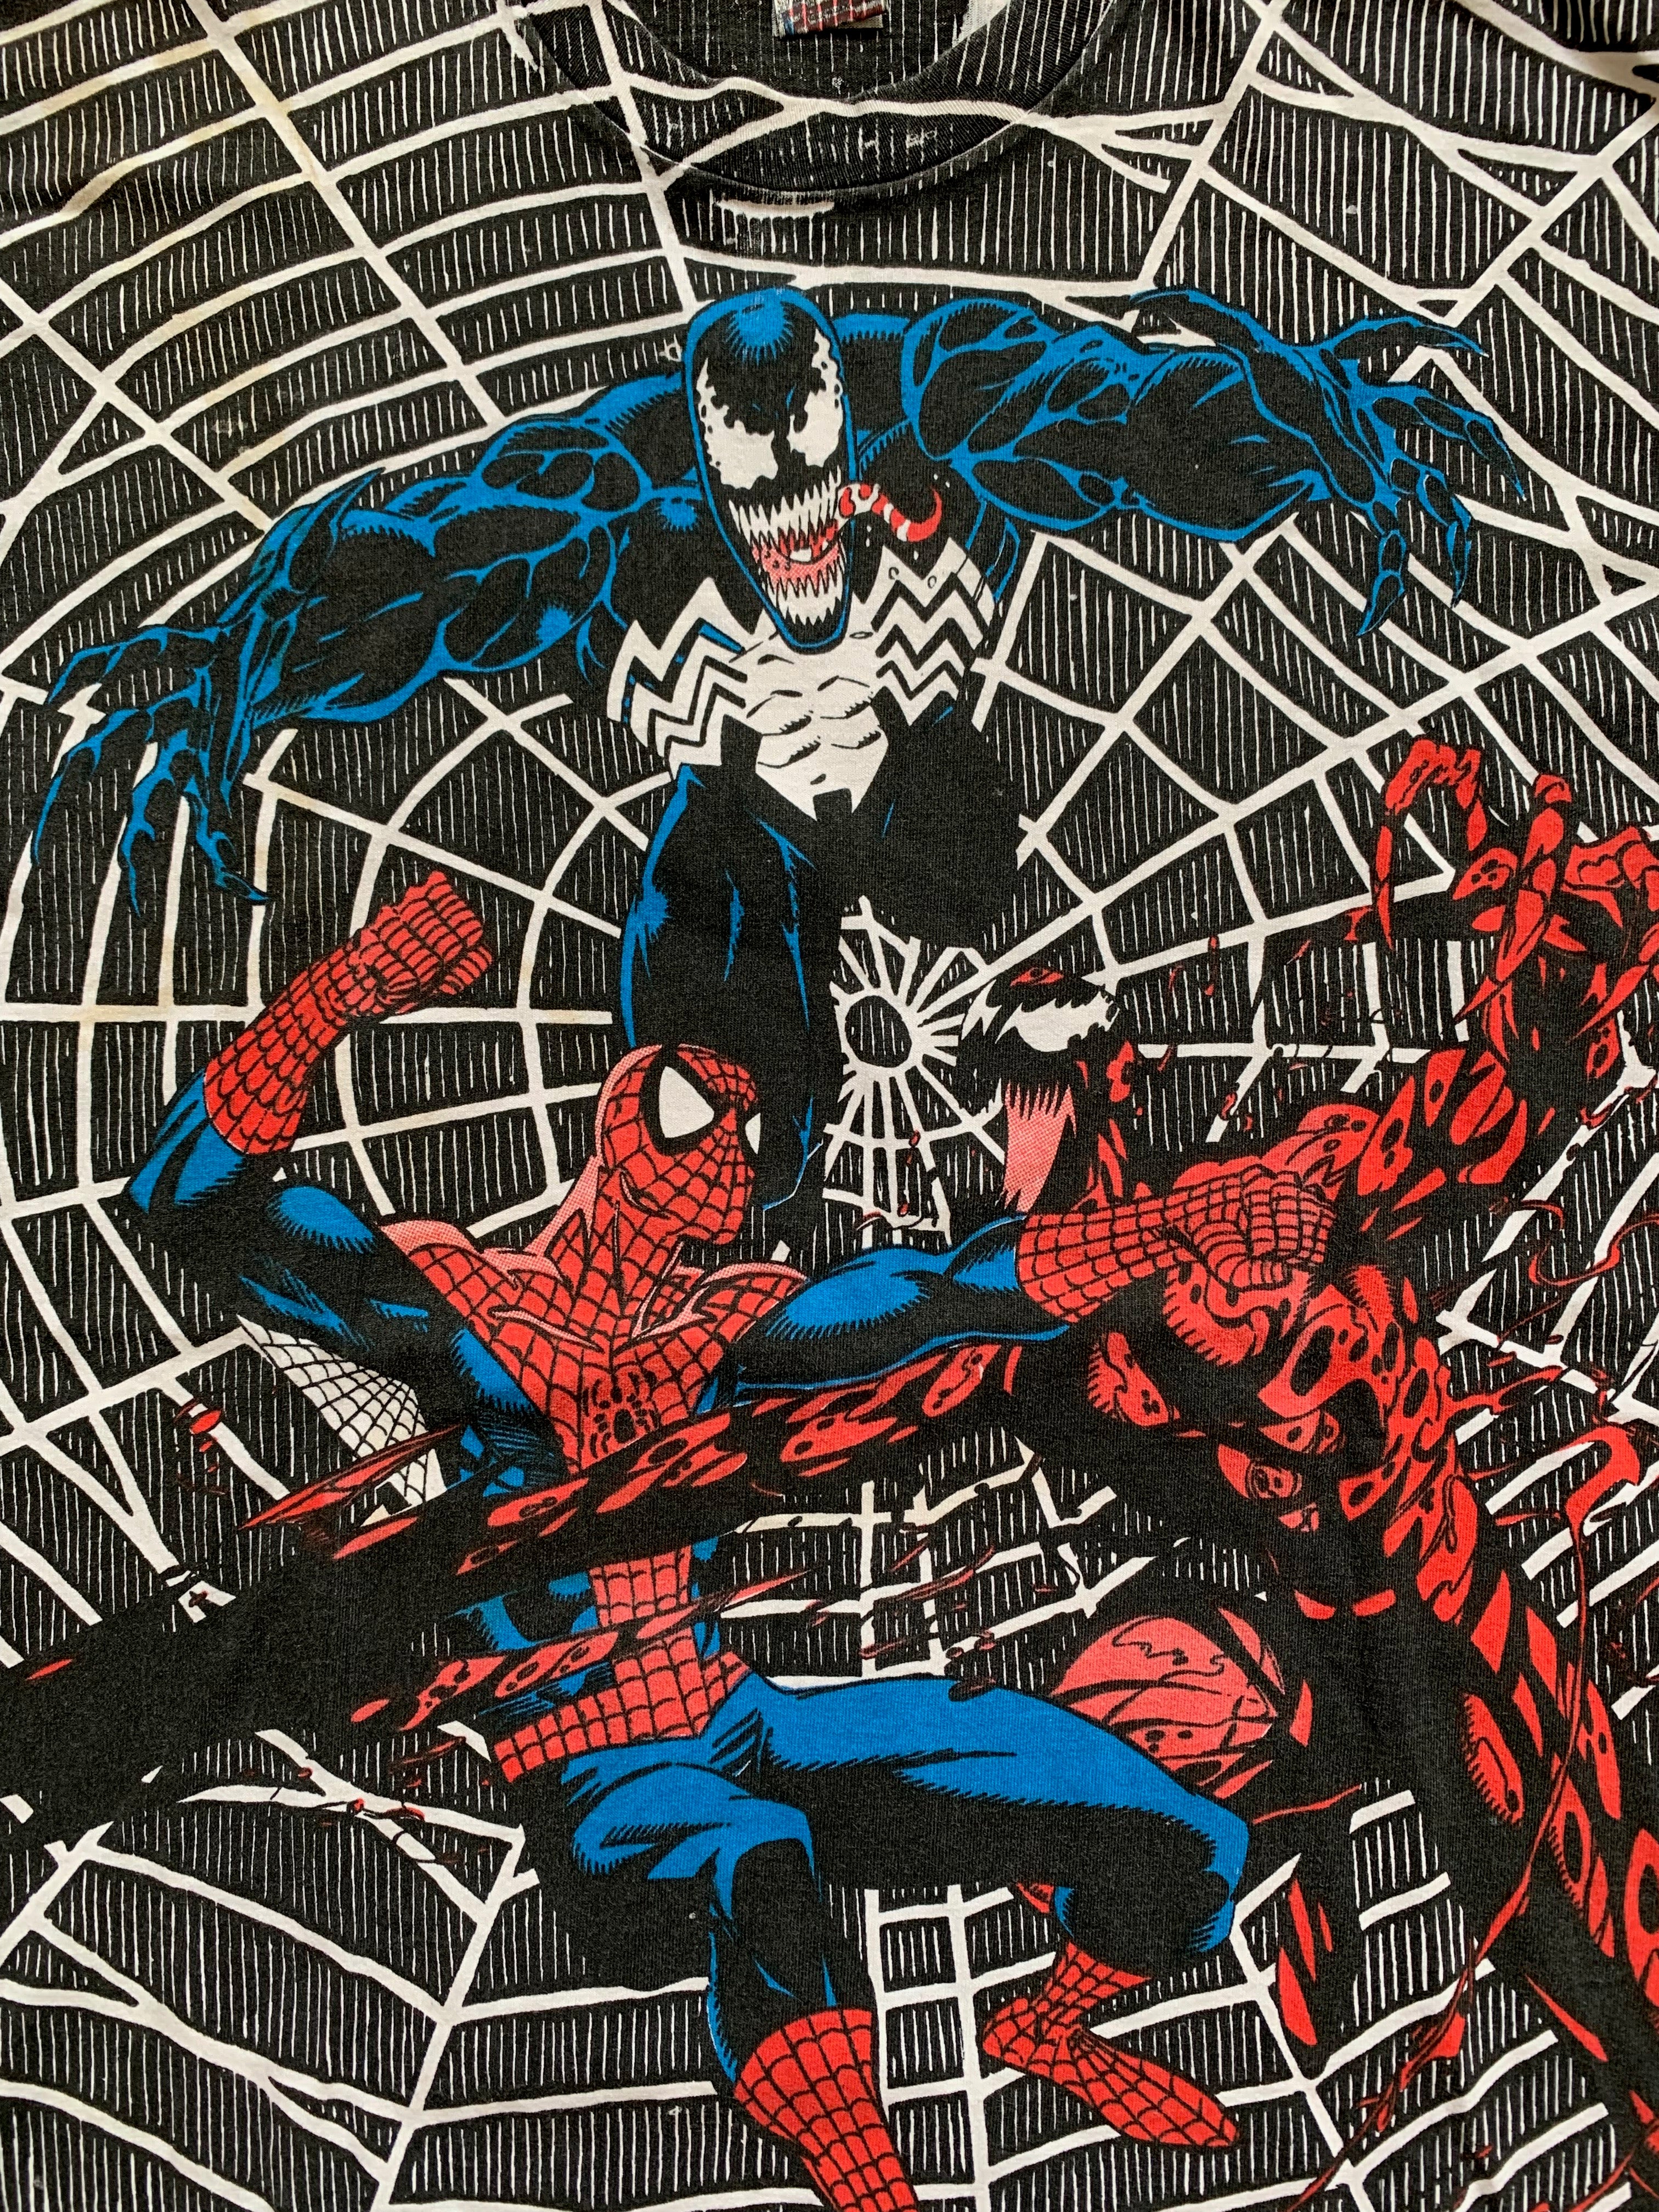 Vintage 1993 Spider Man T-Shirt - XL